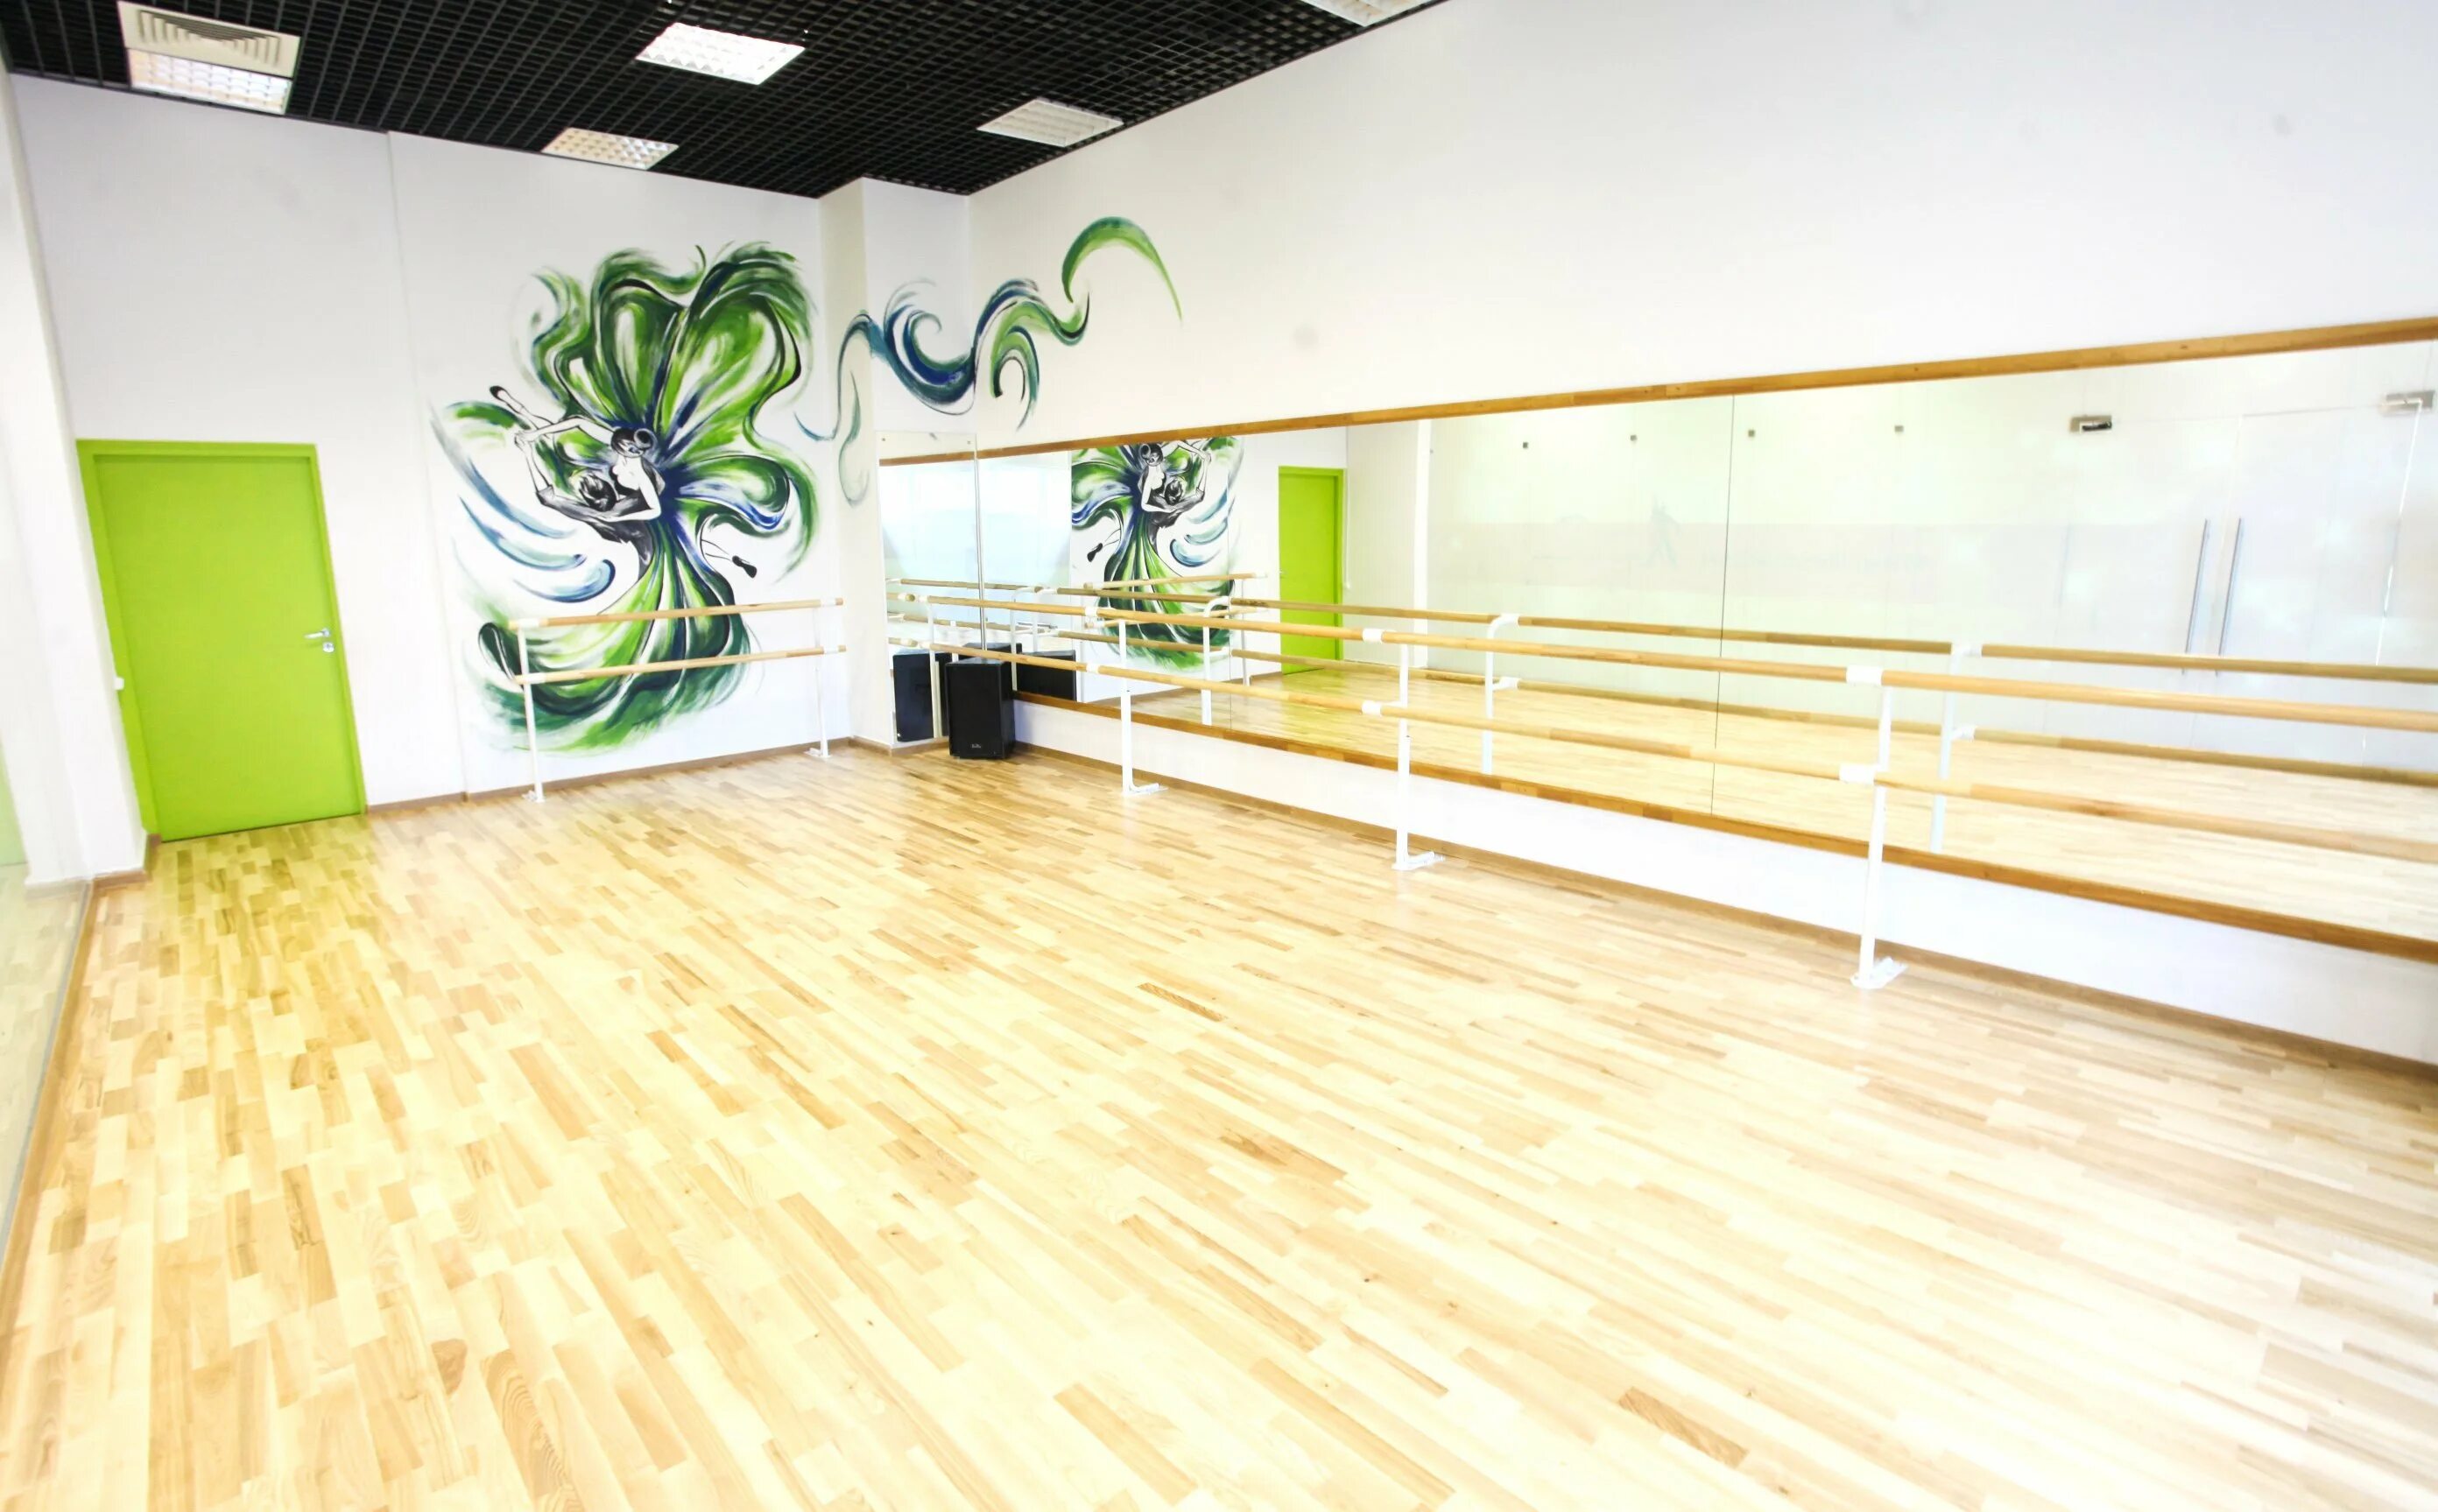 Студия танцев для начинающих. Хореографический зал в школе. Интерьер танцевального зала. Современный хореографический зал. Залы для танцев.